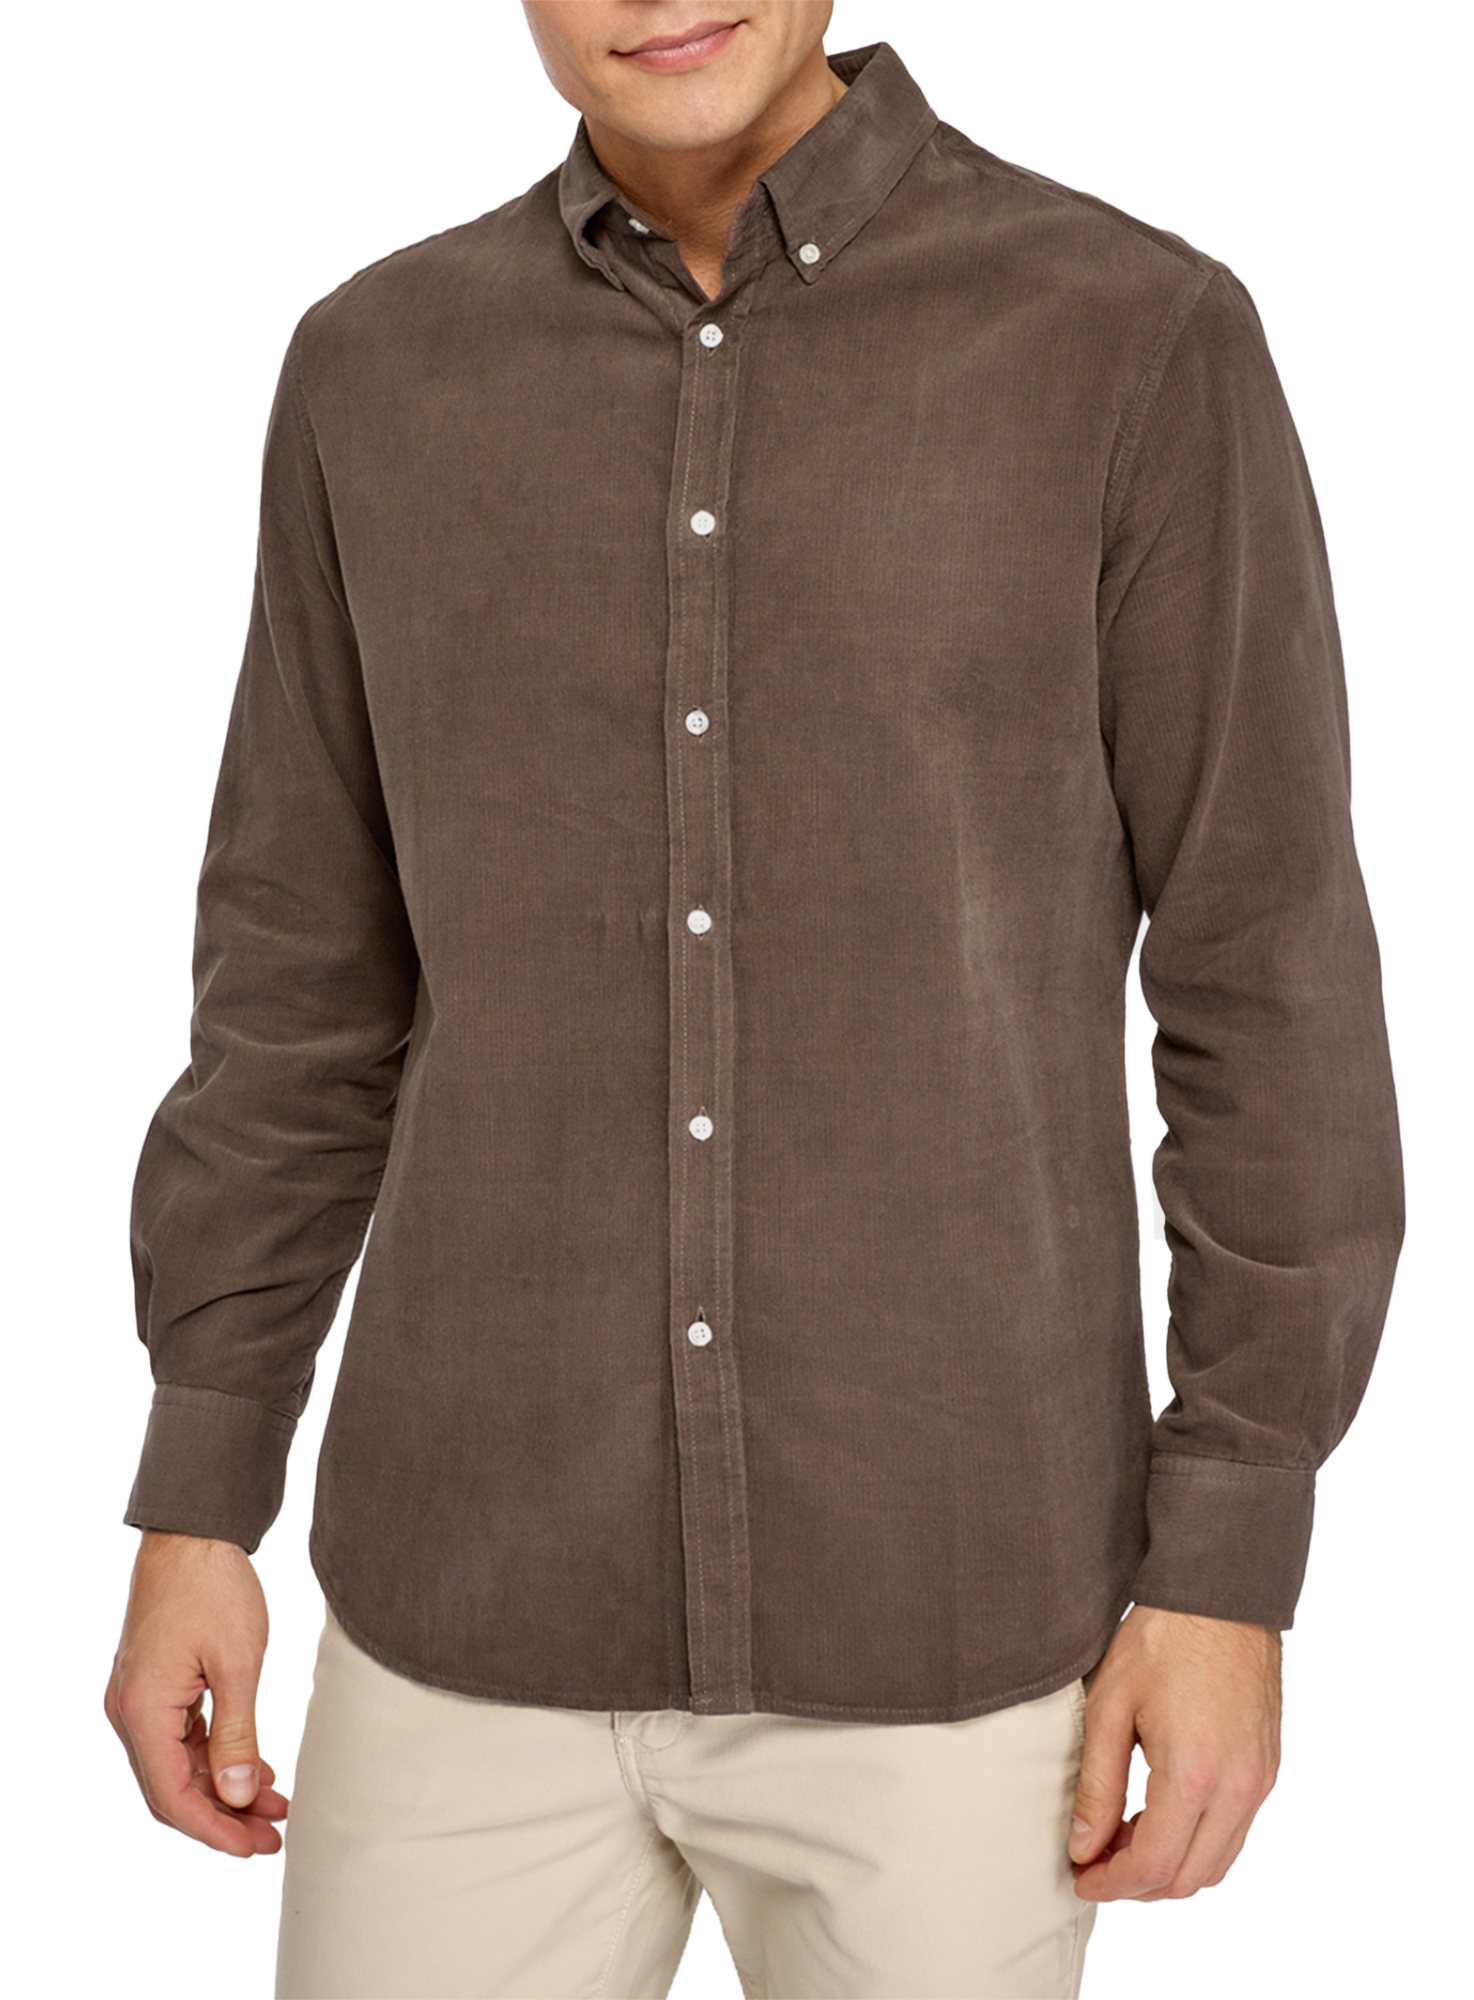 Рубашка мужская oodji 3L310203M коричневая M